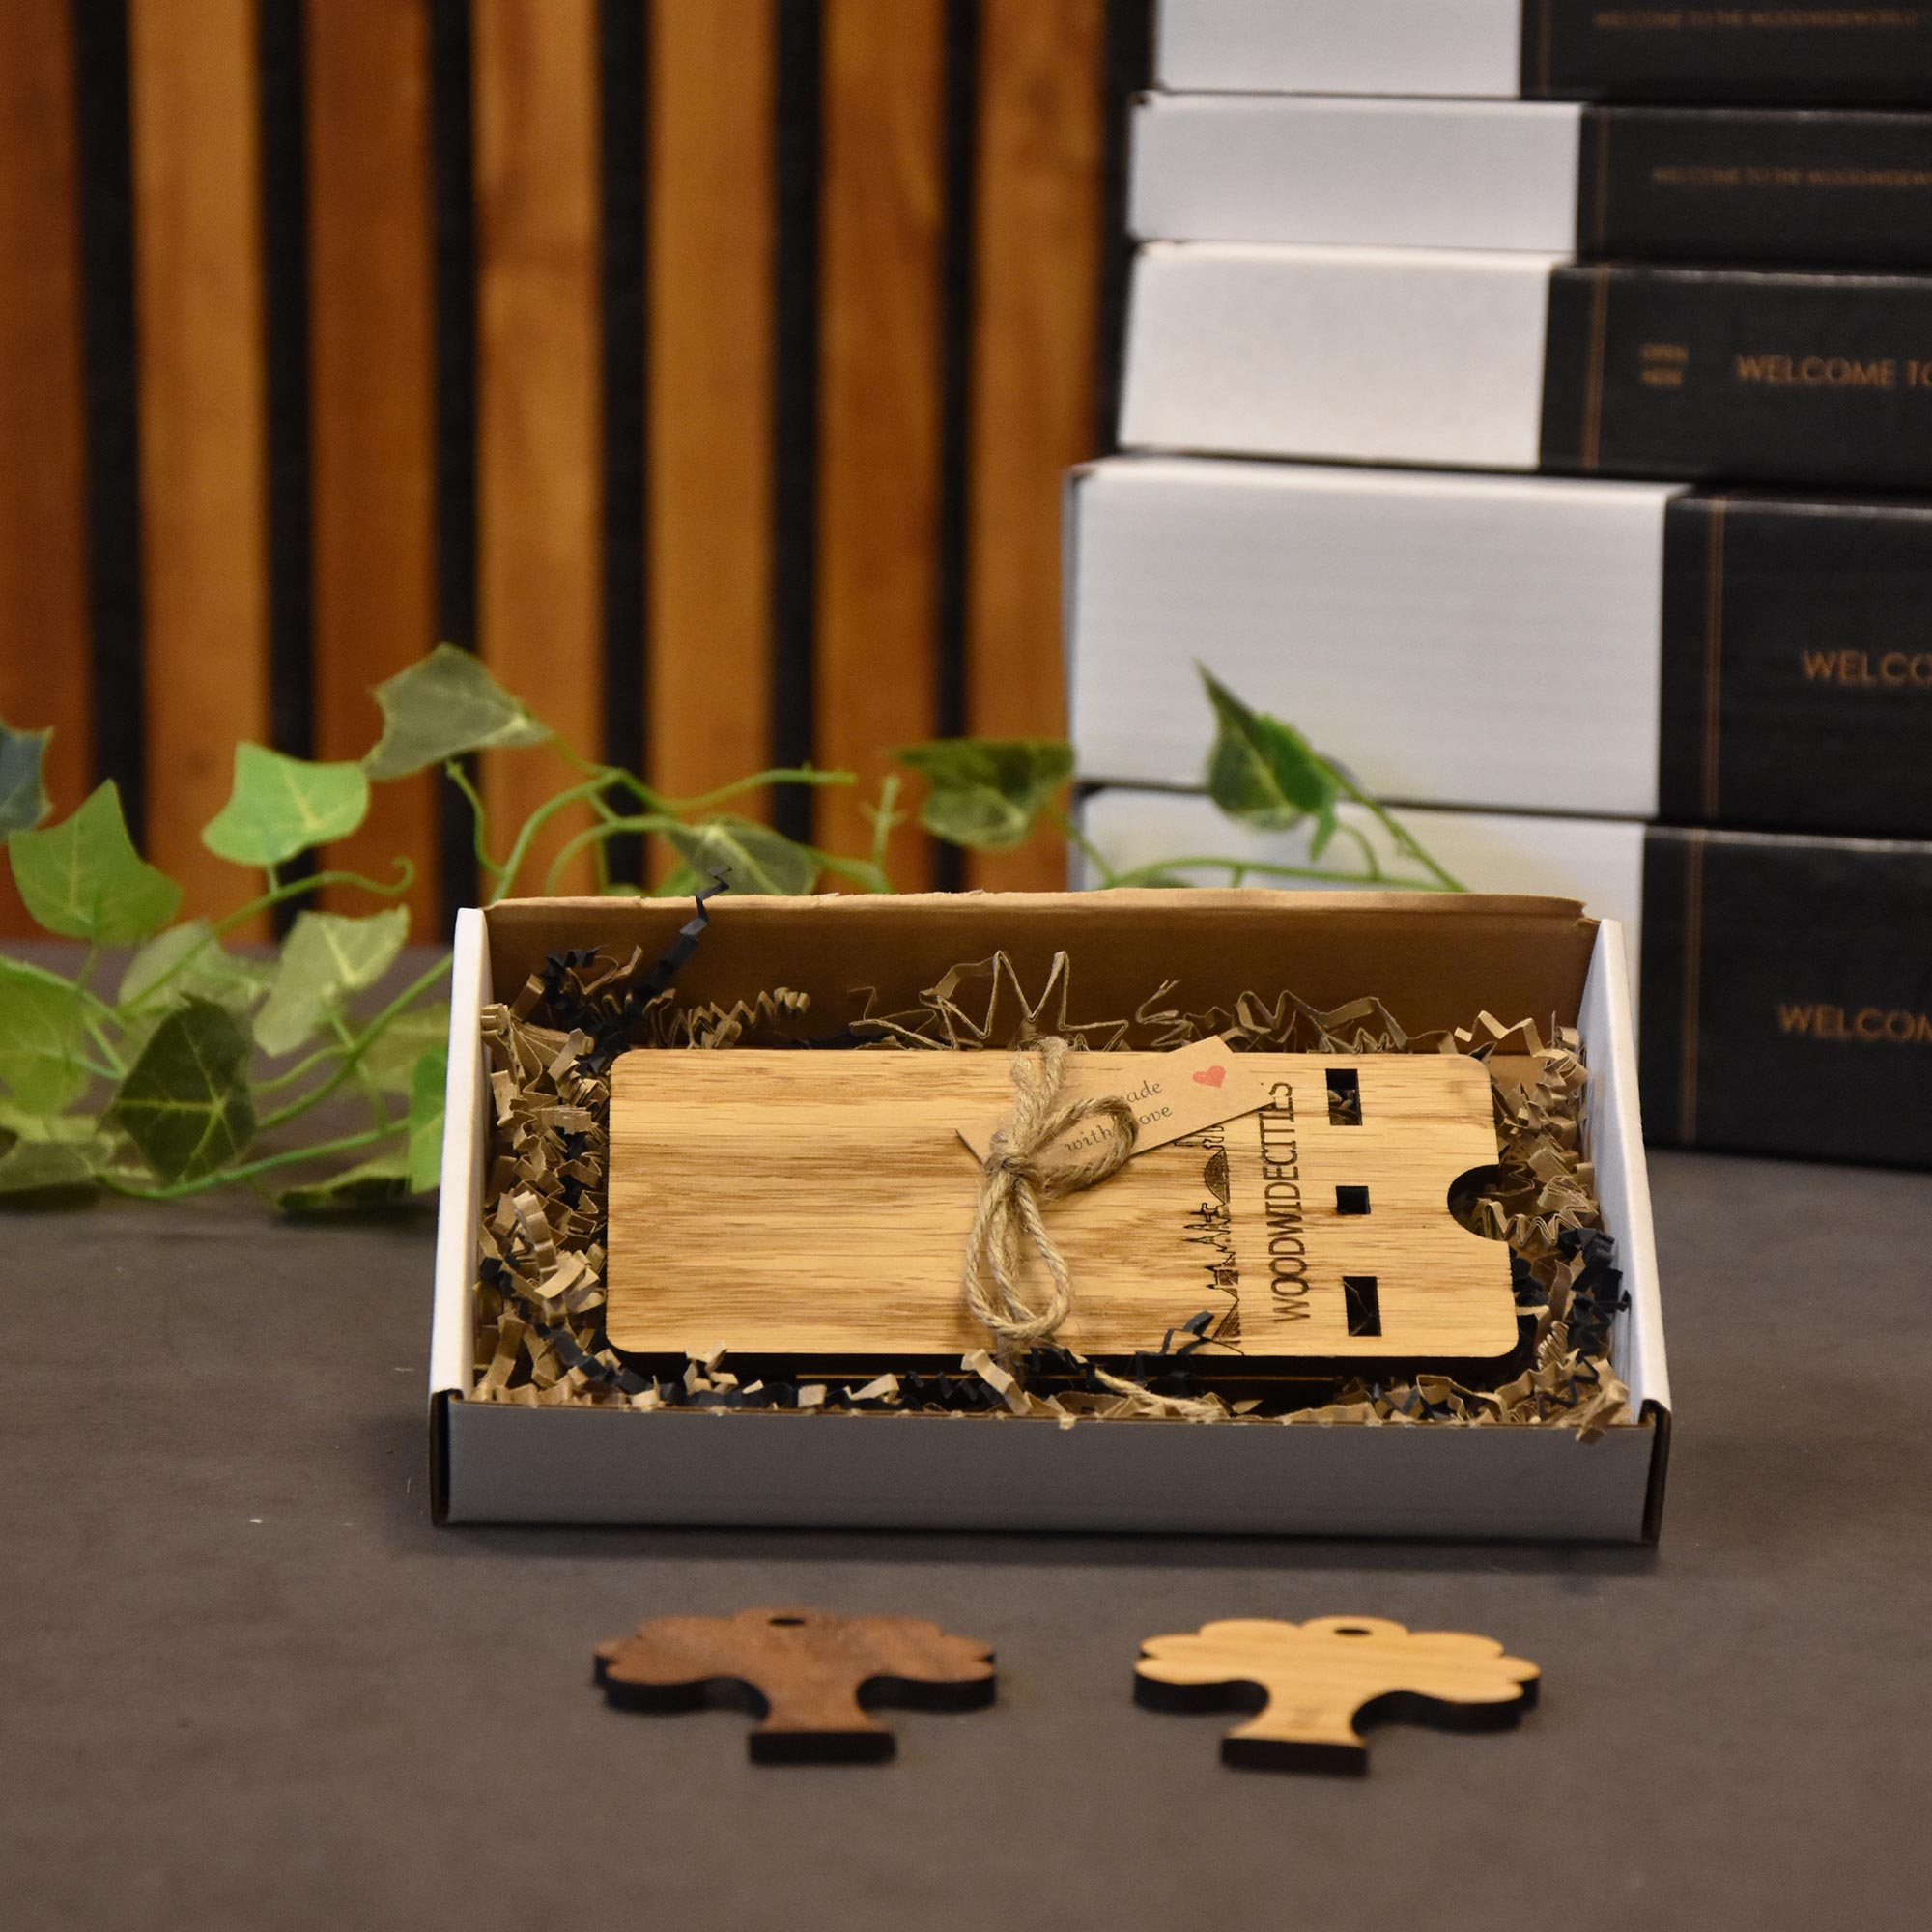 Skyline Telefoonhouder Hoorn houten cadeau decoratie relatiegeschenk van WoodWideCities